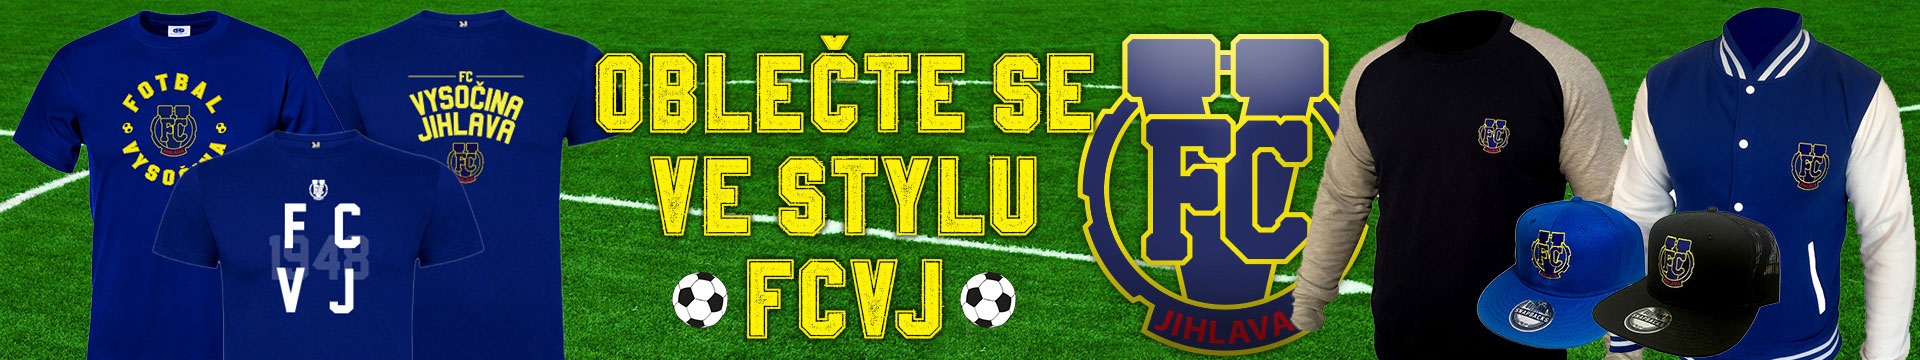 FC Vysočina Jihlava Fanshop